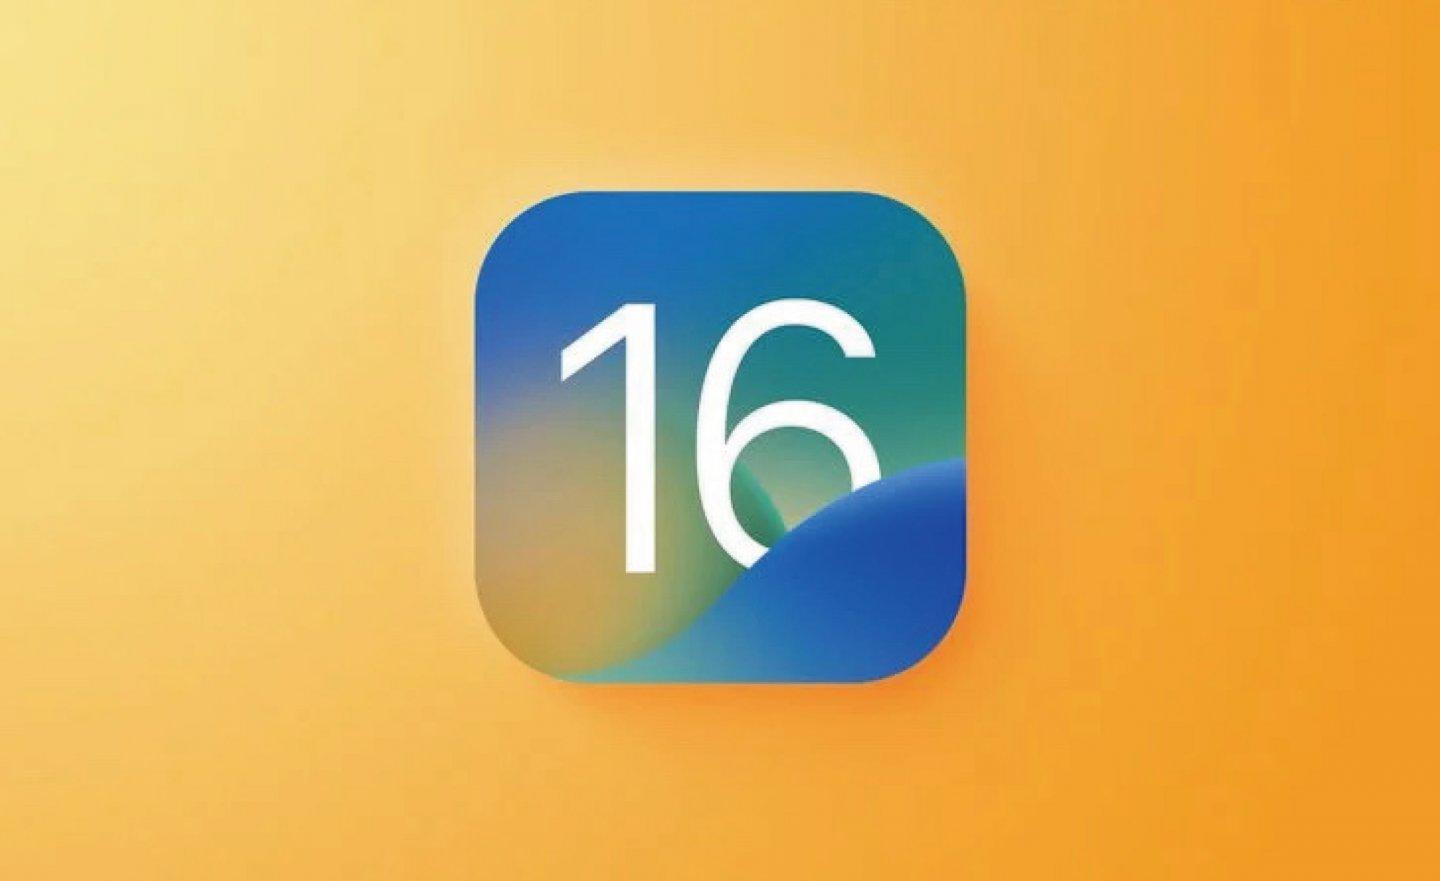 你升級 iOS 16 了嗎？部分使用者發現部分無法解決的錯誤和電池續航變短